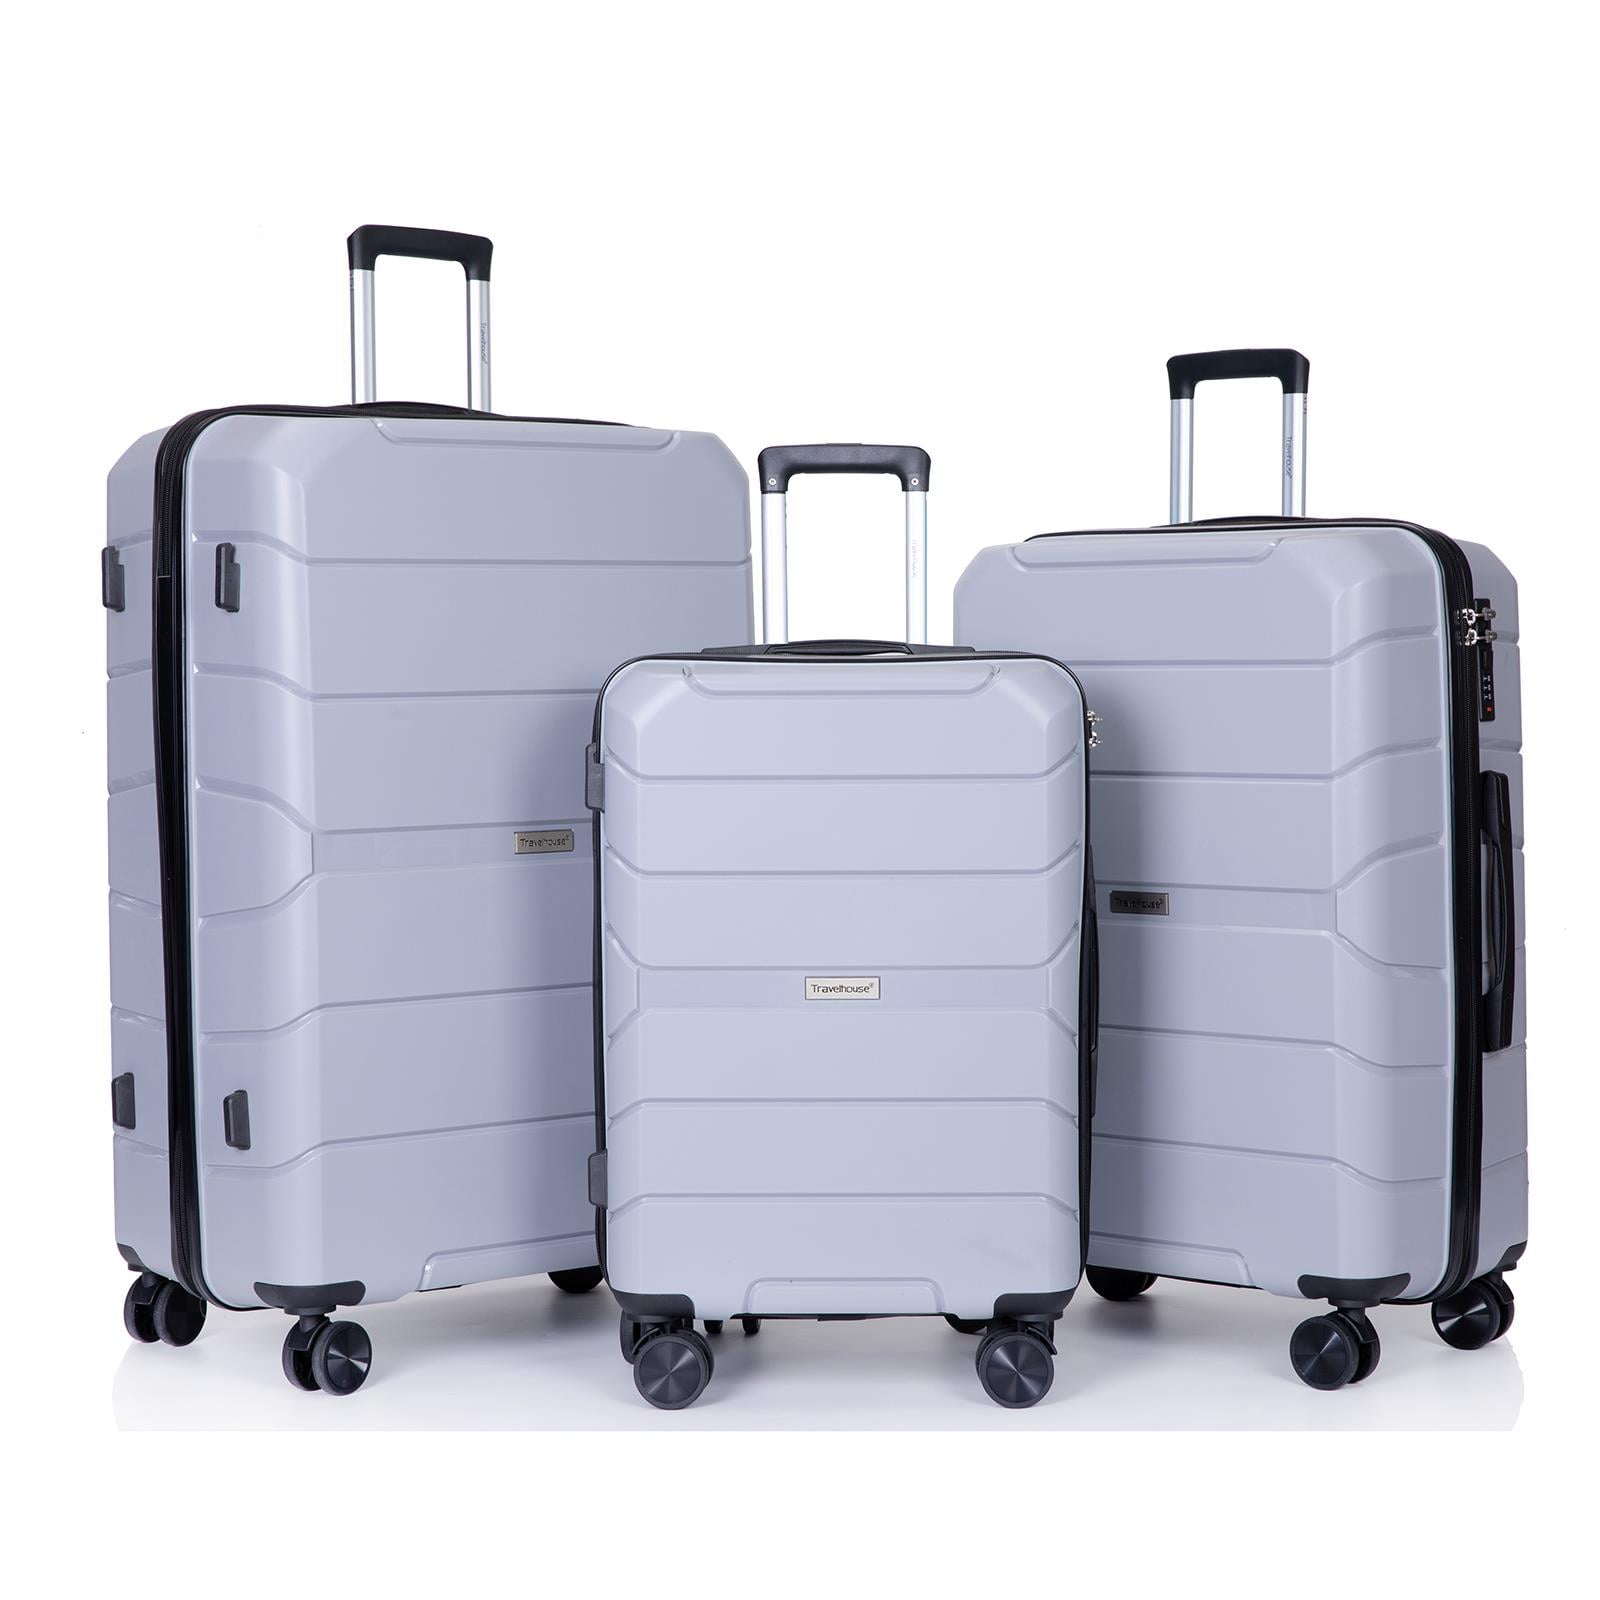 Zimtown 3 Piece Luggage Set, PP Hard Shell Suitcase Luggage Sets Double ...